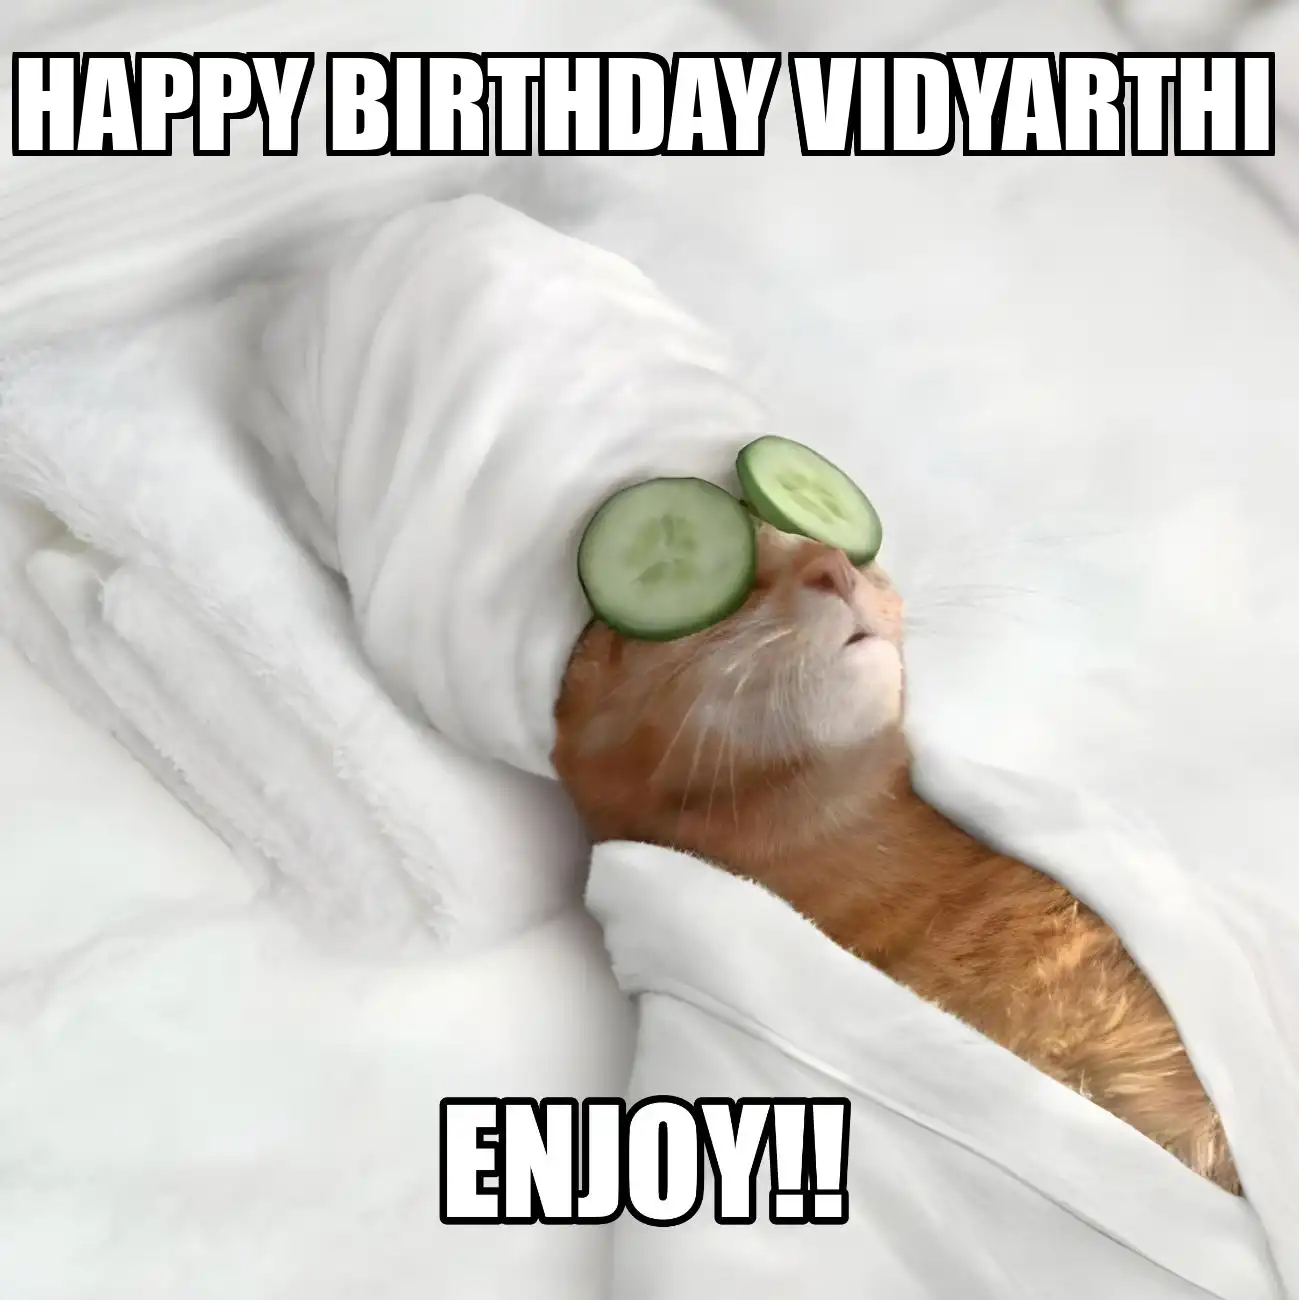 Happy Birthday Vidyarthi Enjoy Cat Meme